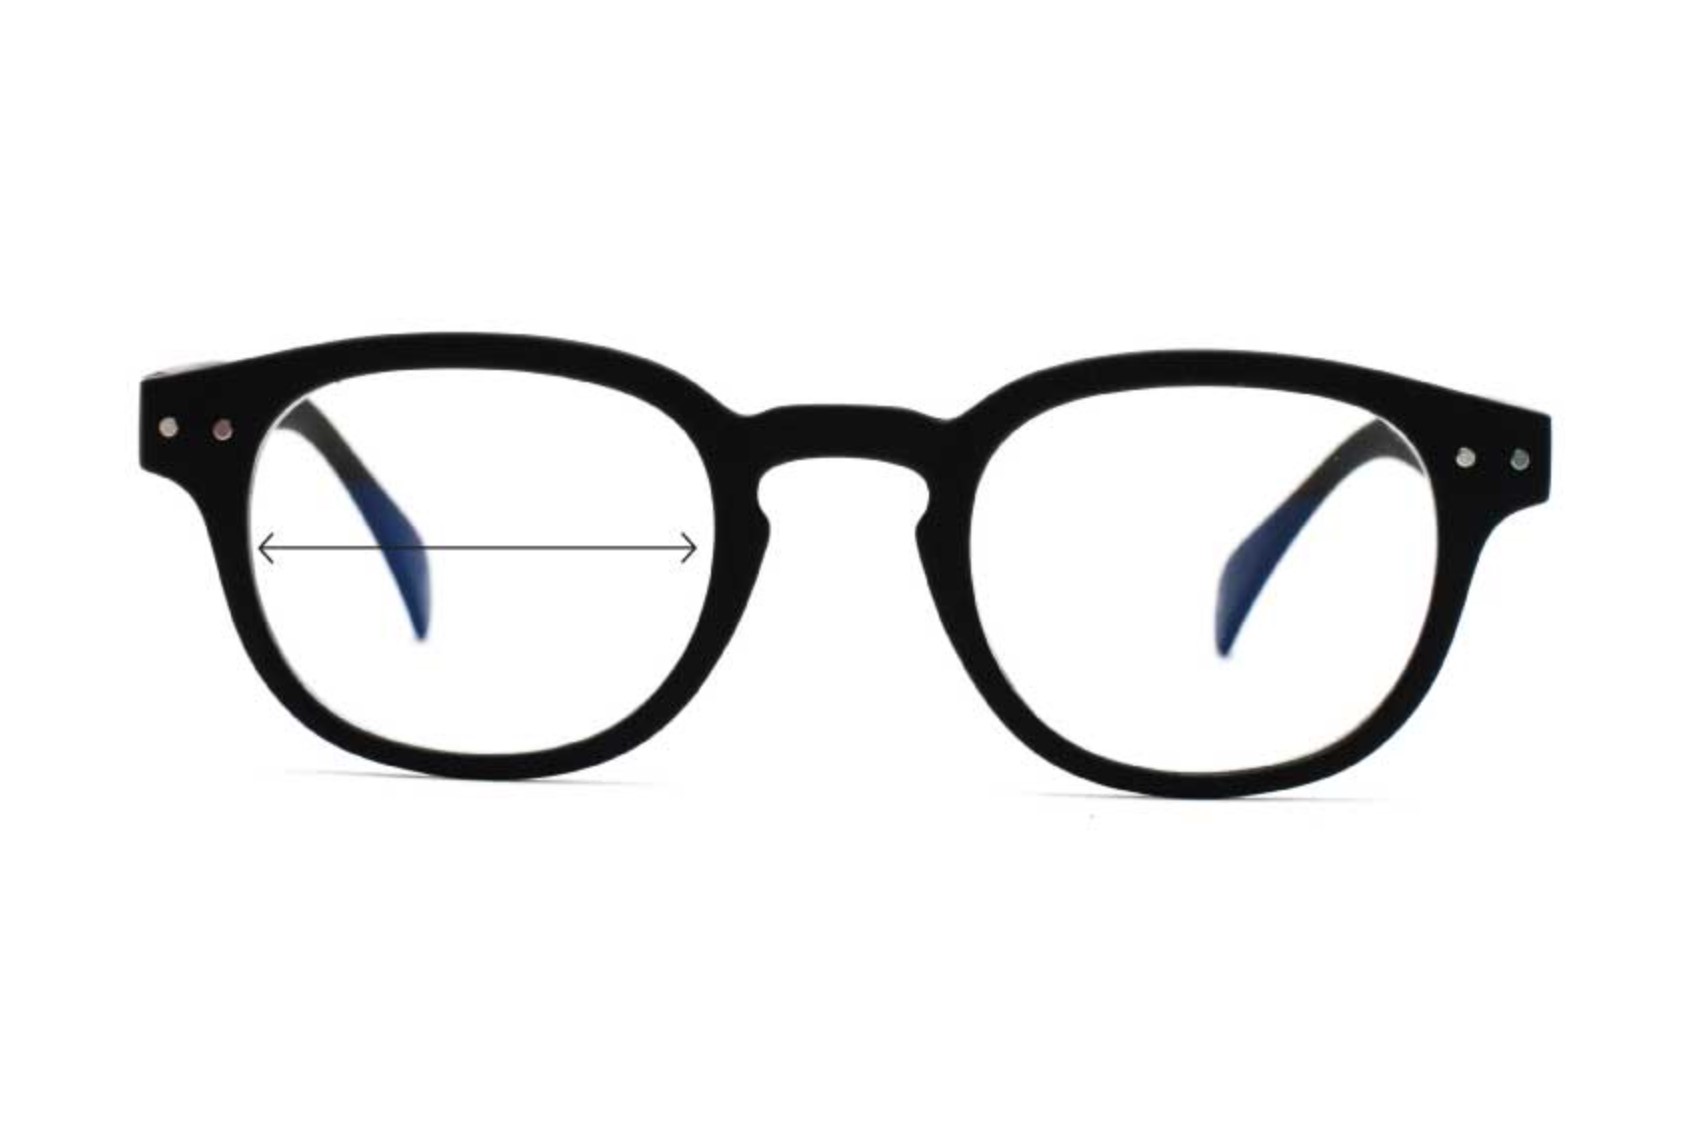 – Anton BlueVision mm Blue Light Reading Glasses, Men's